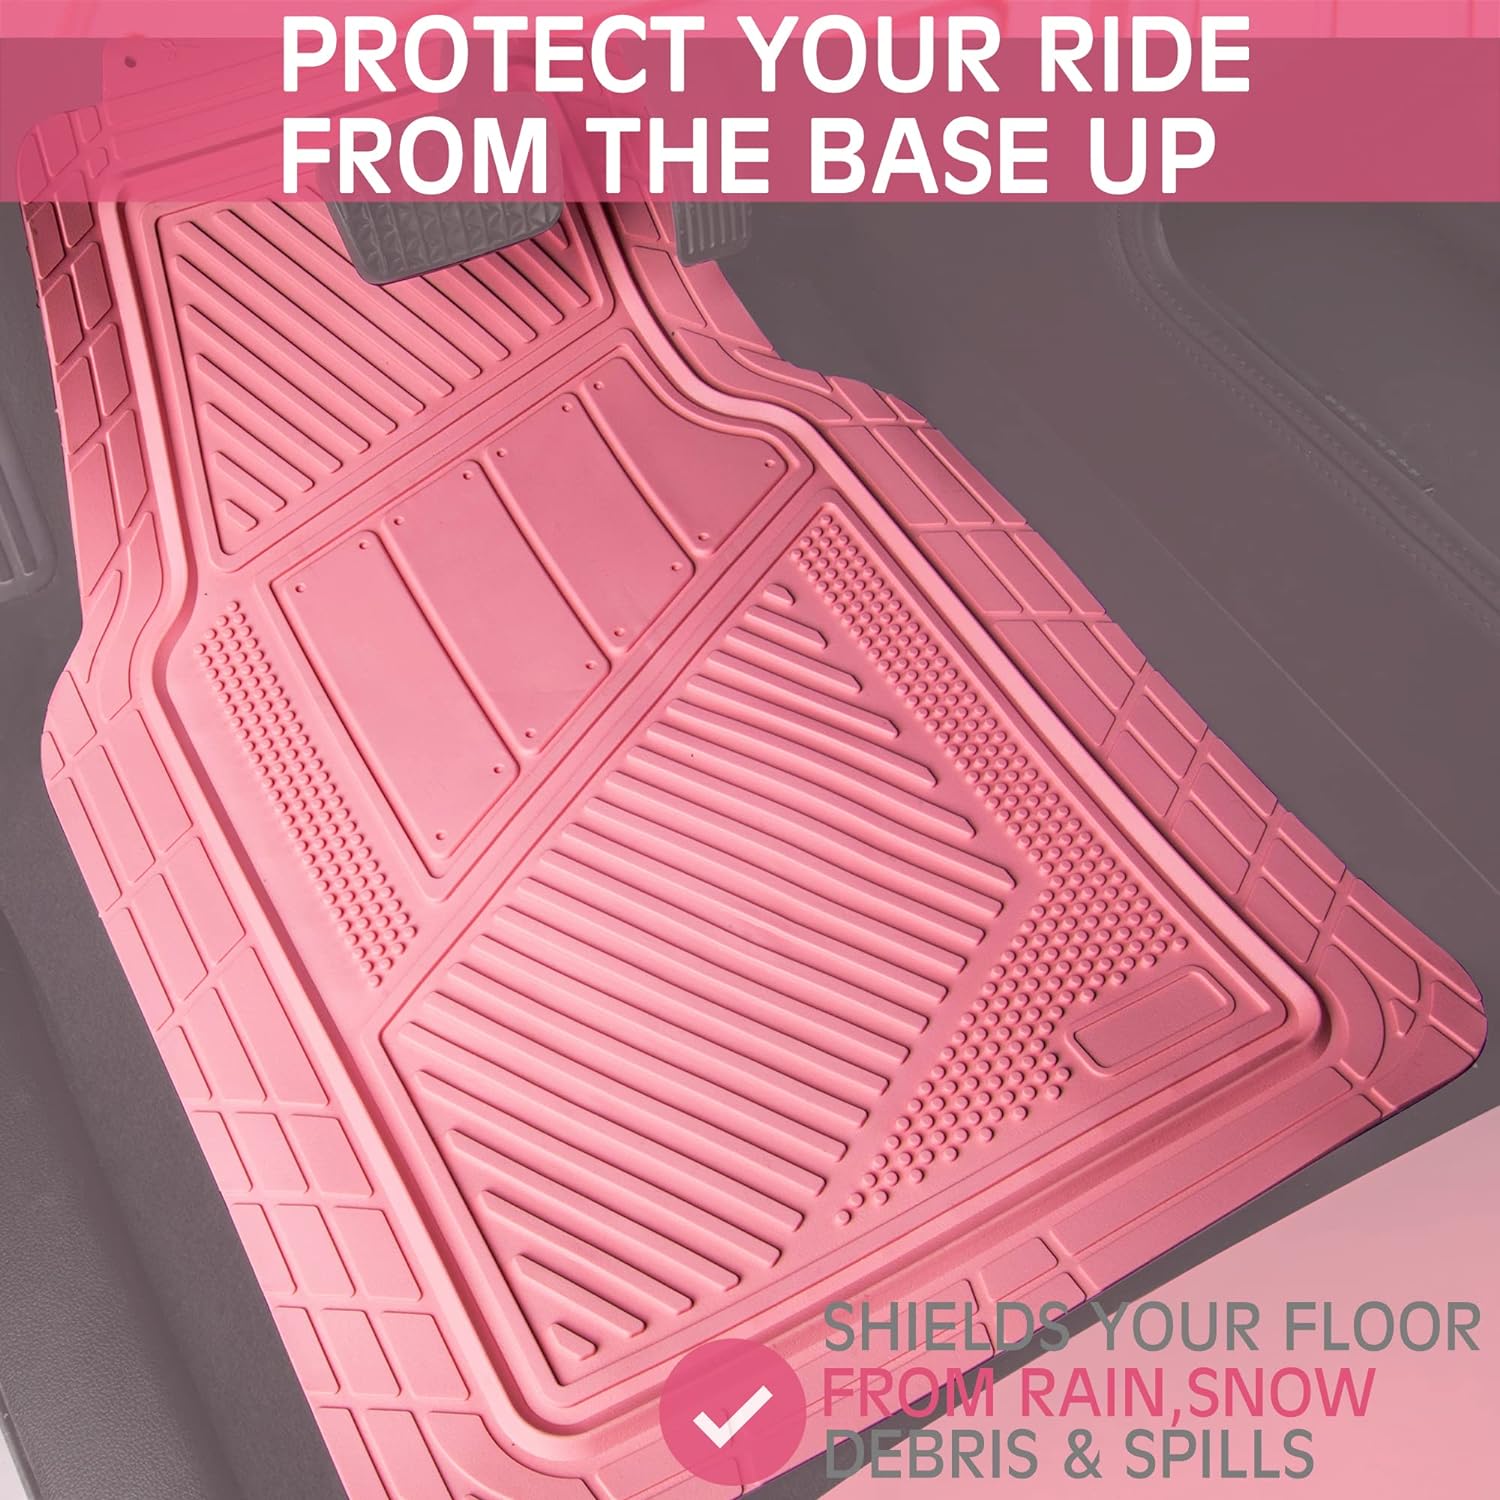 CAR PASS Heavy Duty Rubber Floor Mats Pink 4-Piece Car Mat Set - Universal Waterproof for SUV Truck, Durable All-Weather Mats，Car Women,Girly(All Pink)